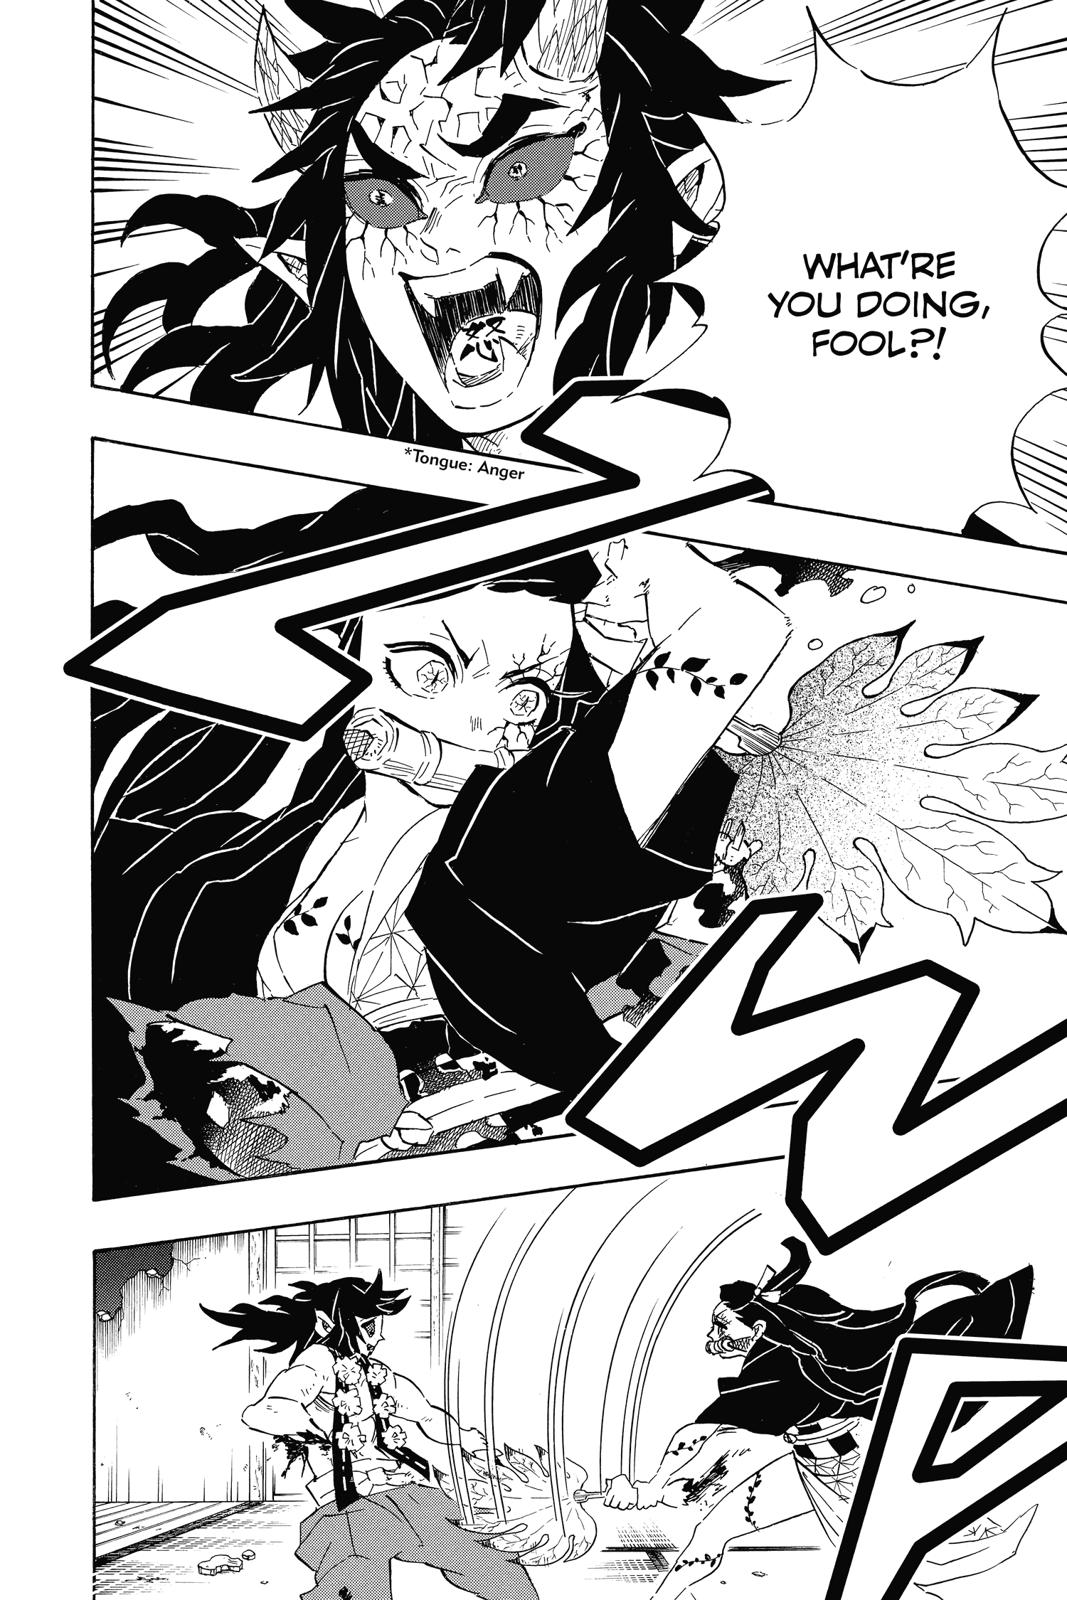 Demon Slayer Manga Manga Chapter - 109 - image 13